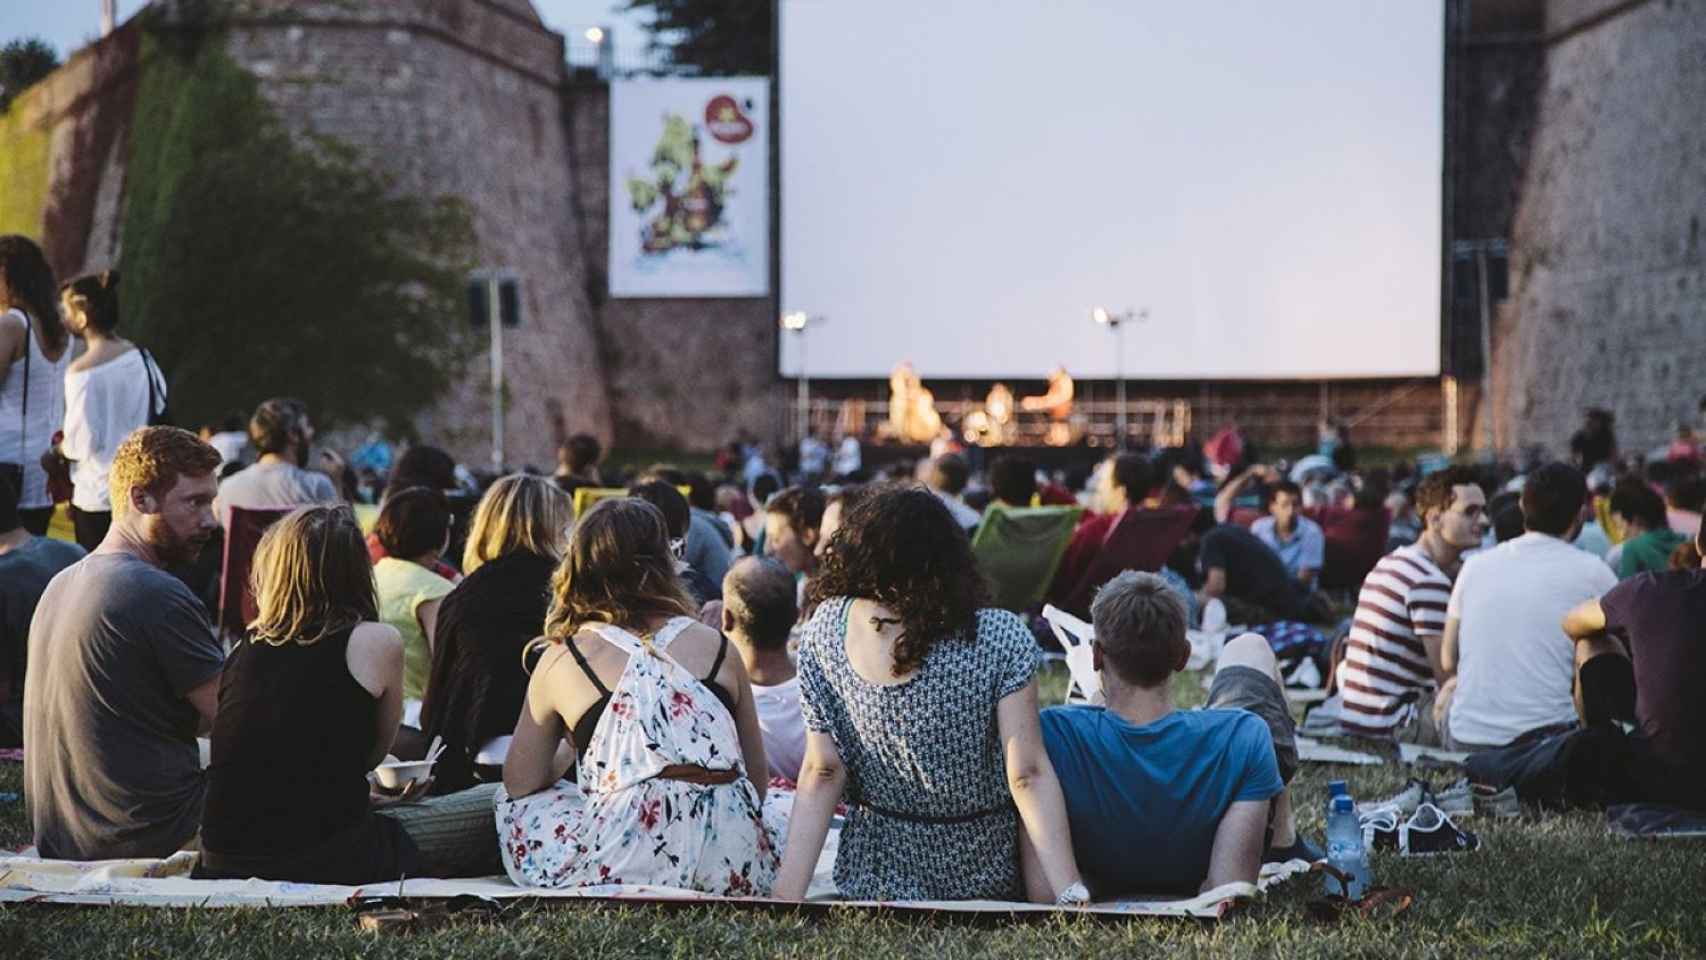 Cine al aire libre de Sala Montjuïc en Barcelona, una de las más populares de la ciudad